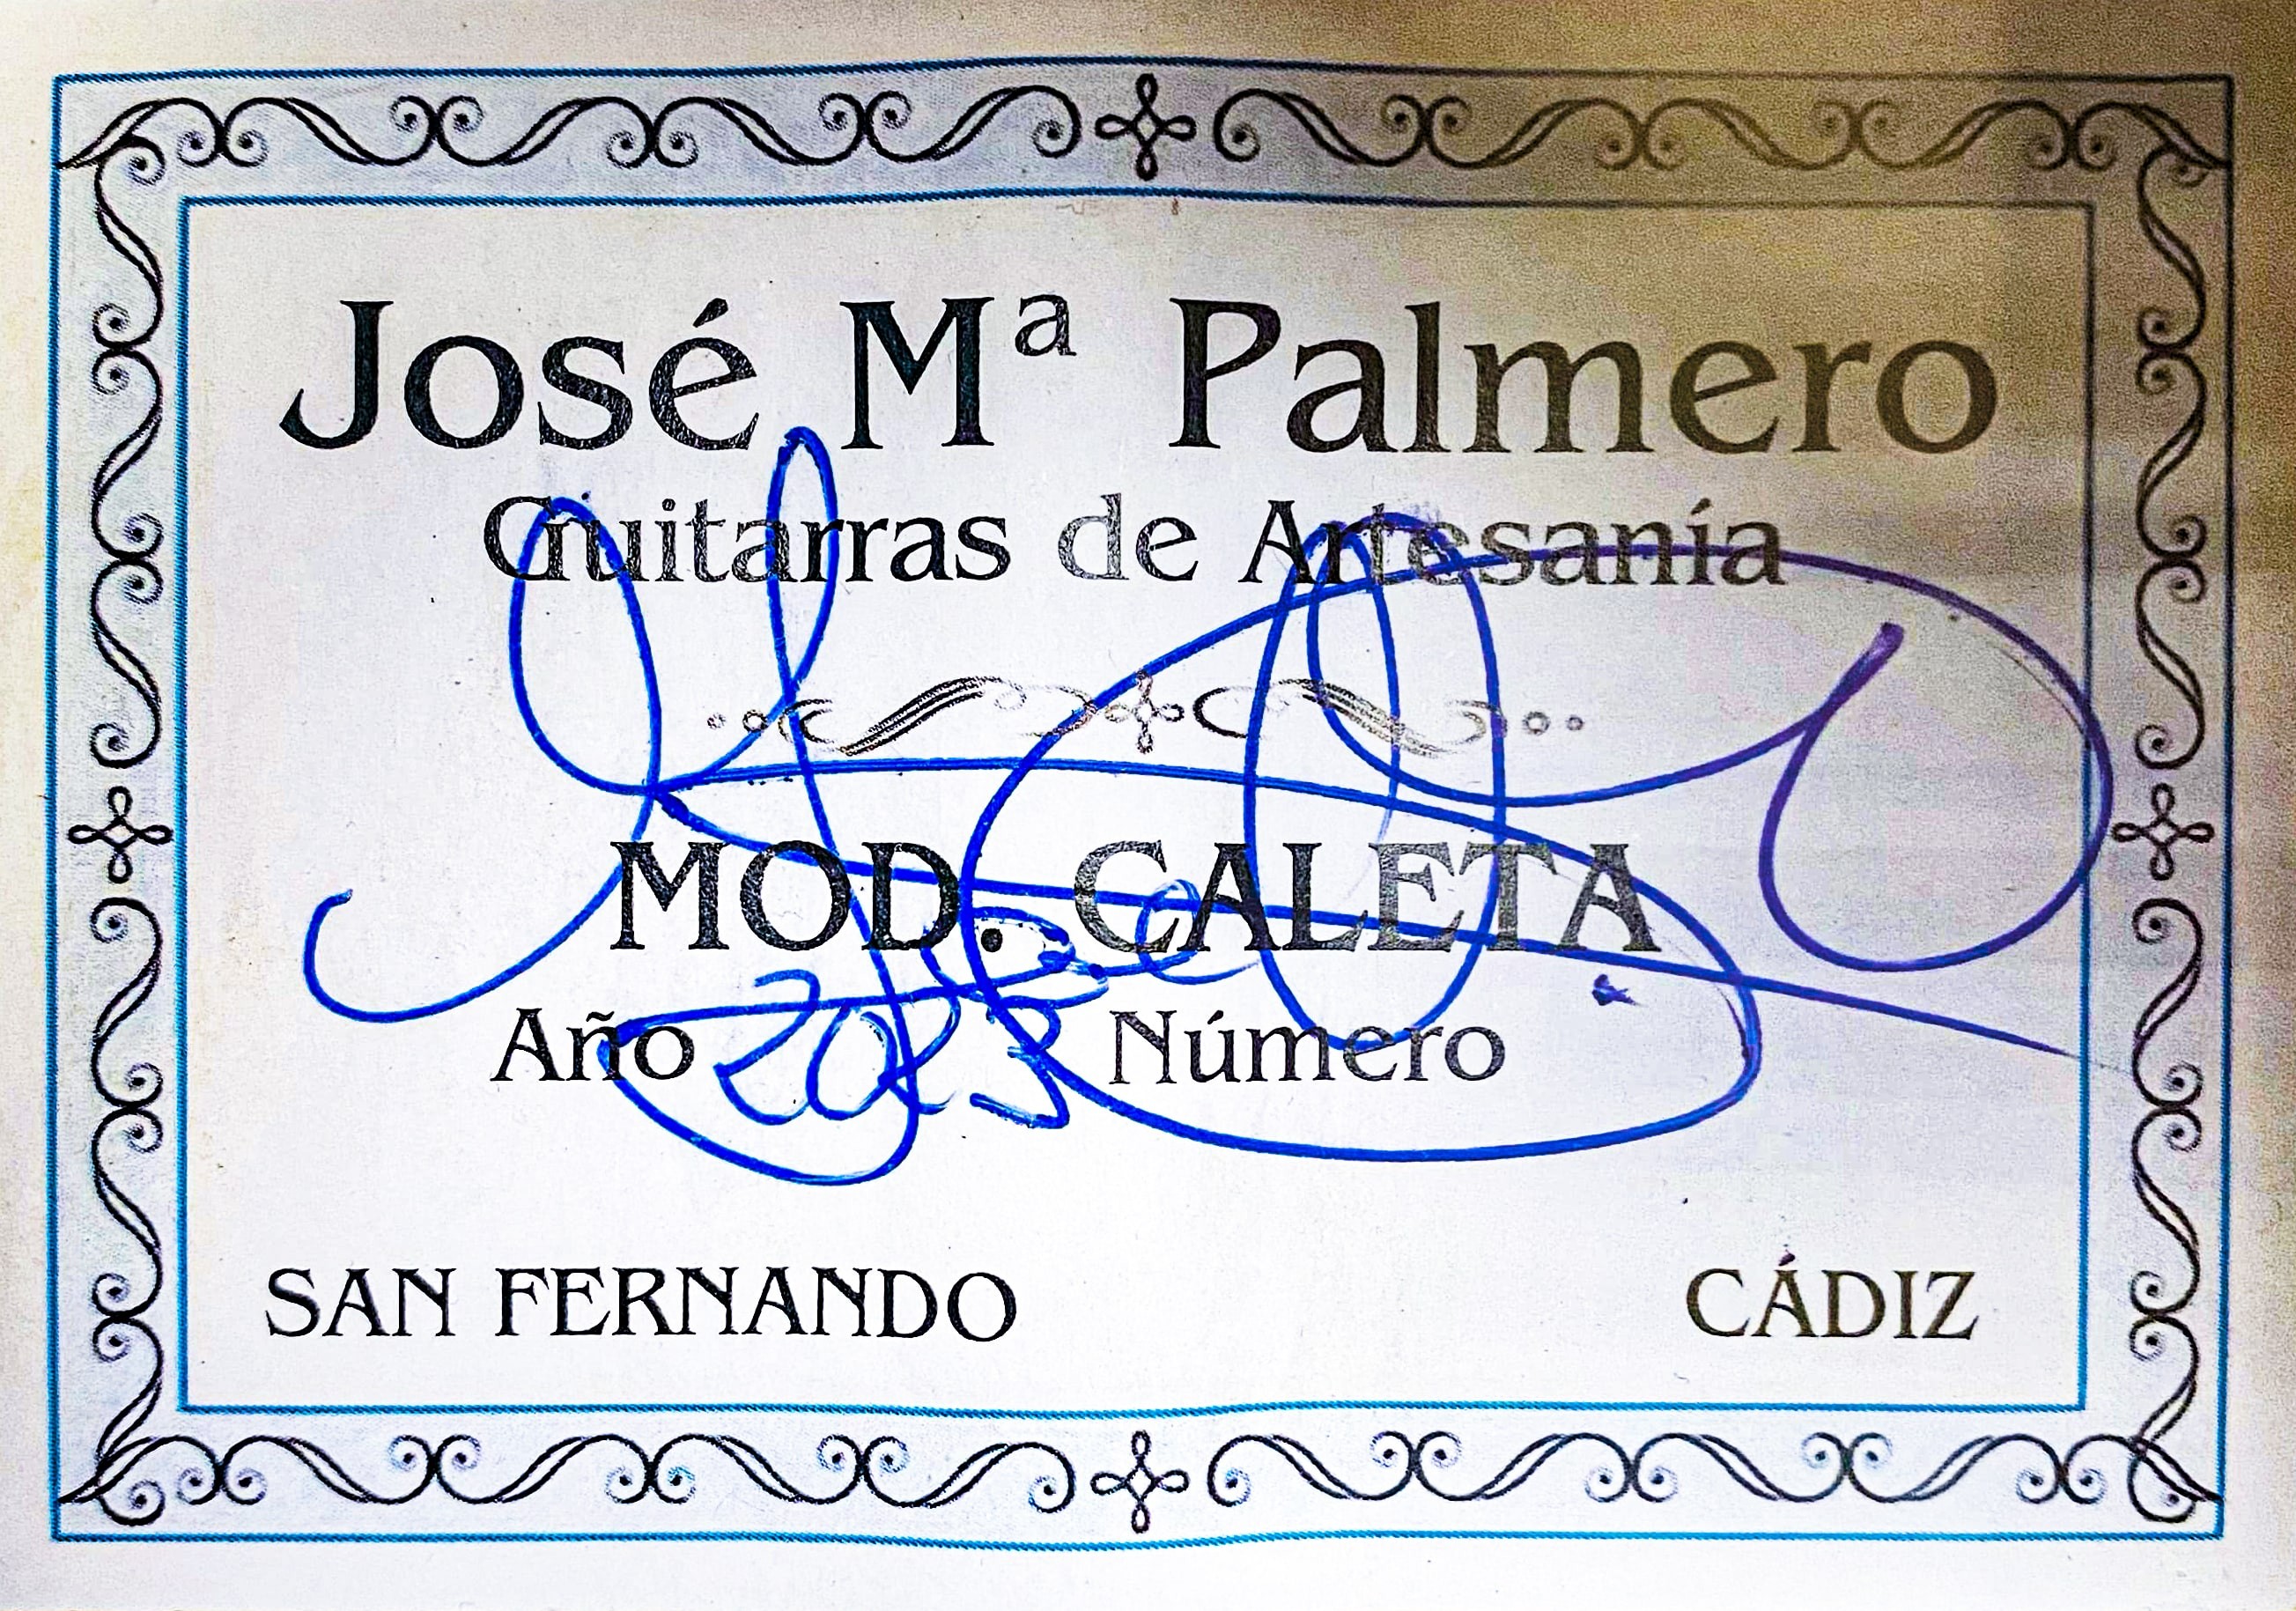 José María Palmero